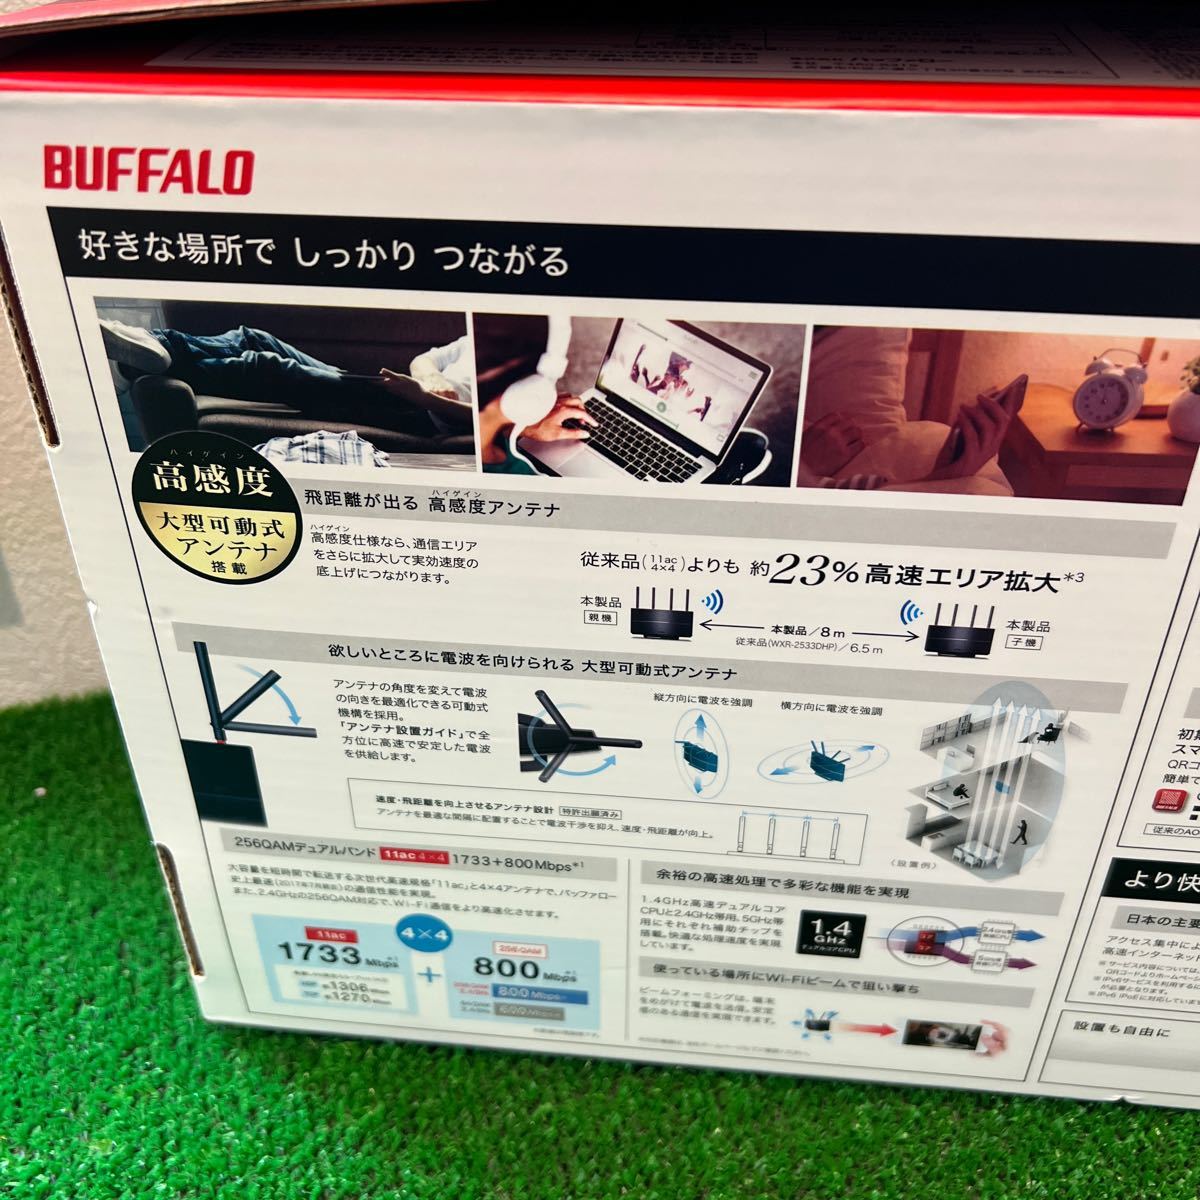 ★BUFFALO Wi-Fi 1306Mbps WiFi 無線LAN